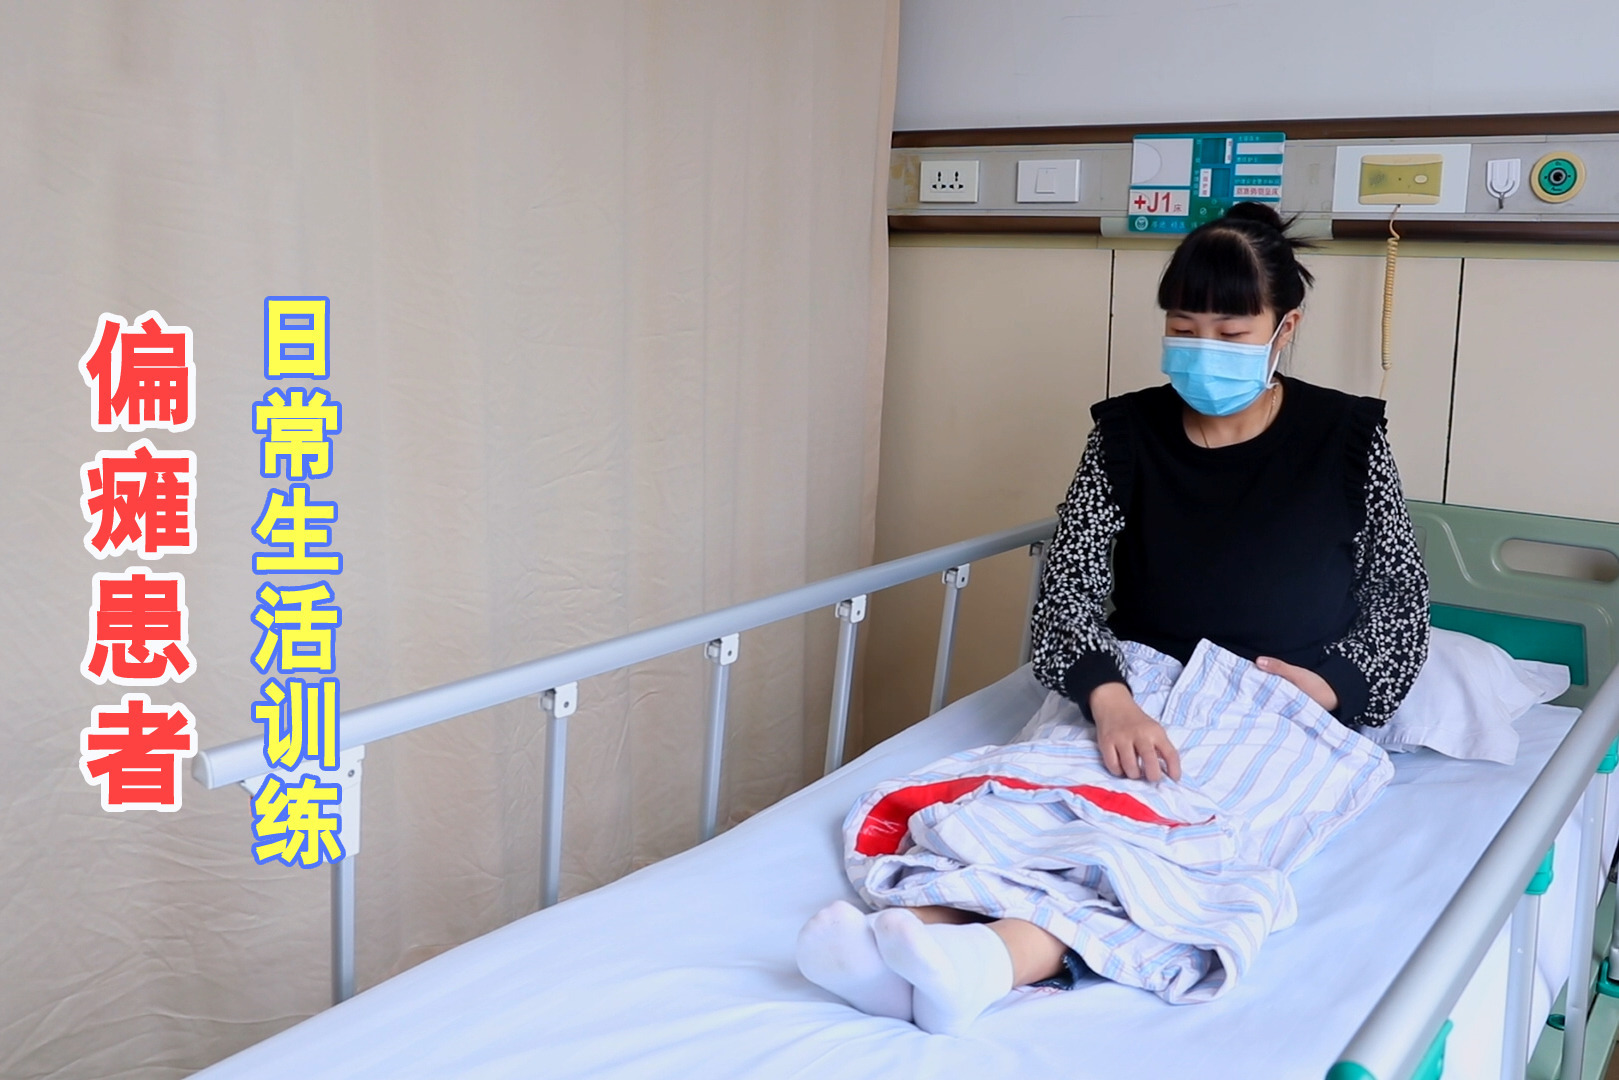 【居家康复系列】偏瘫患者的平衡训练指南 康复医学科 -北京市海淀医院